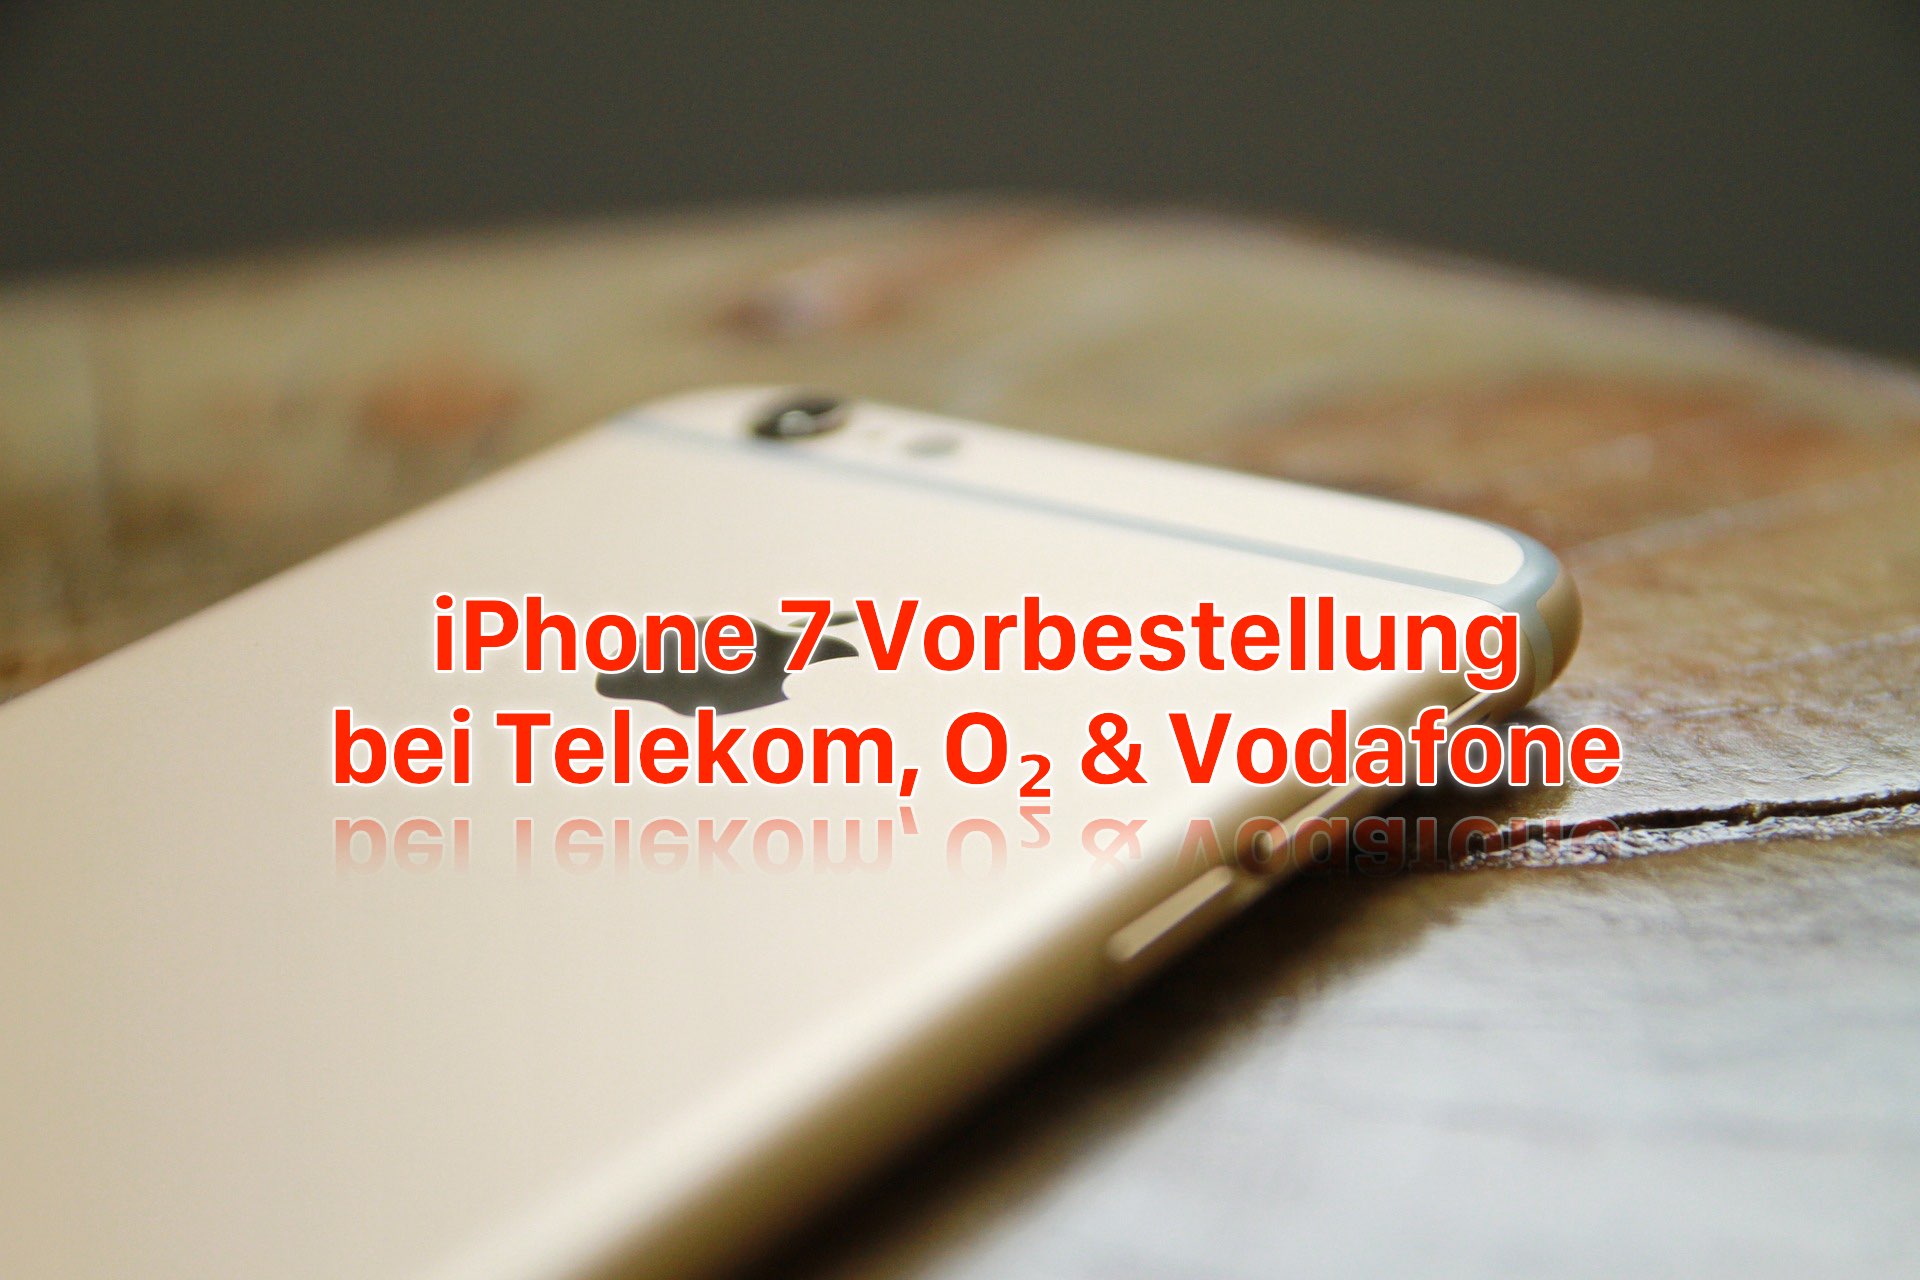 iPhone 7 Vorbestellung: bei Telekom, O2 und Vodafone iPhone 7 reservieren! 11